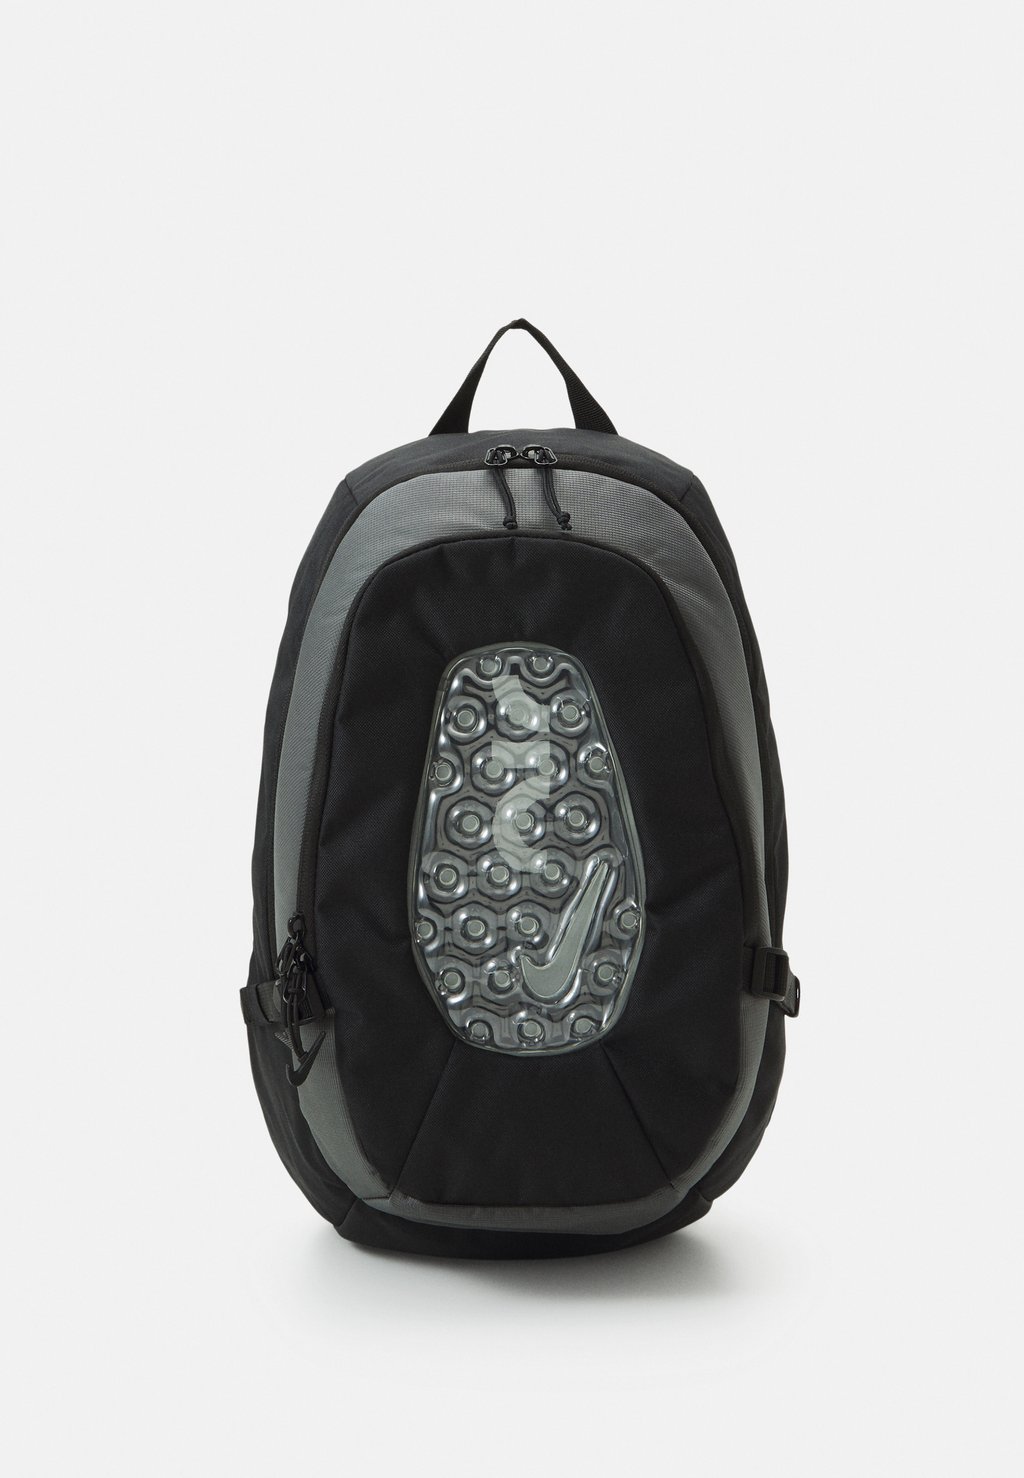 Рюкзак УНИСЕКС Nike, черный/стально-серый/белый